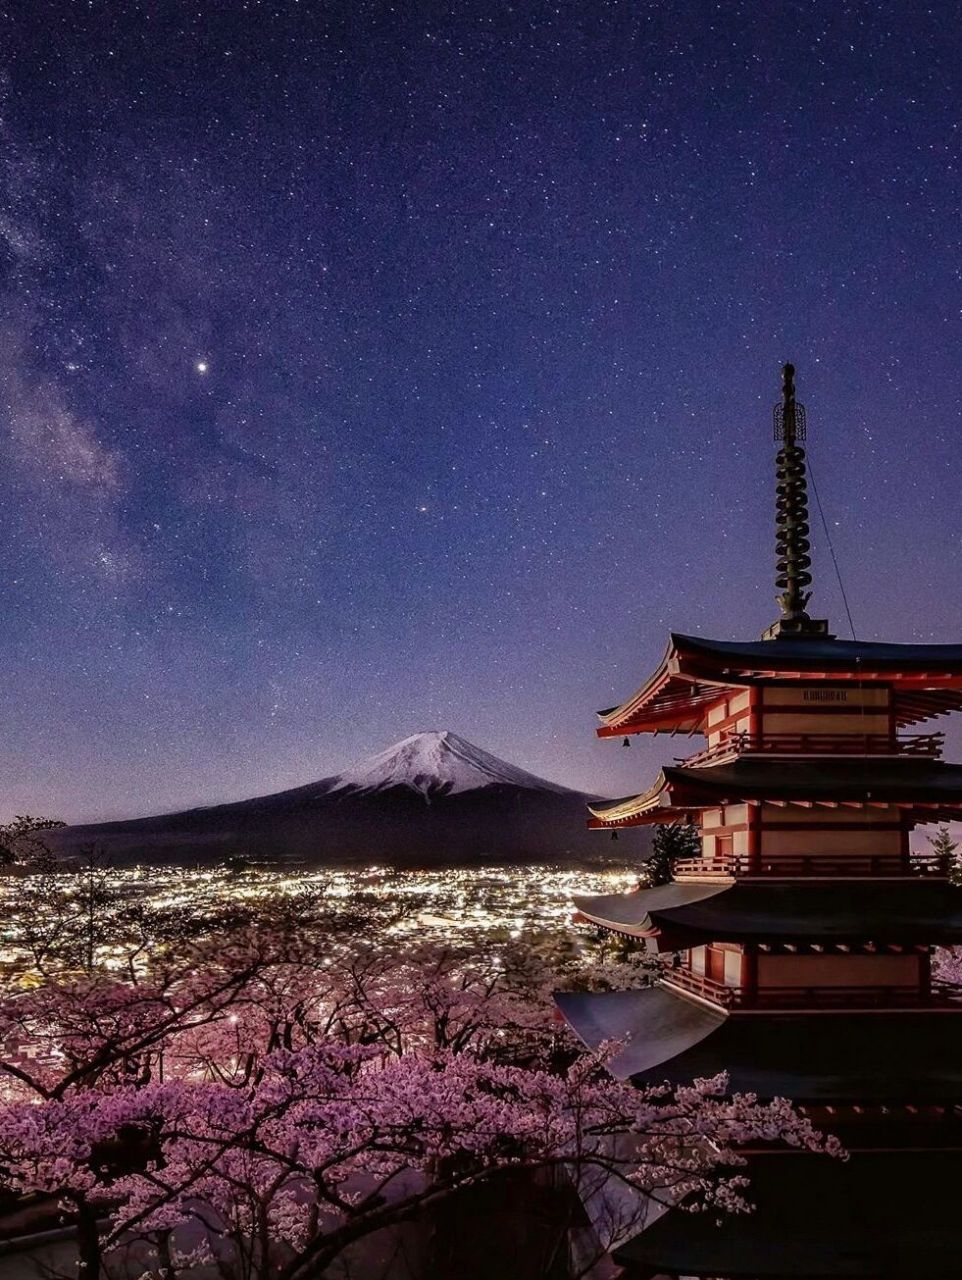 日本9591——富士山91(mount fuji) 富士山(日语:ふじさん;英语